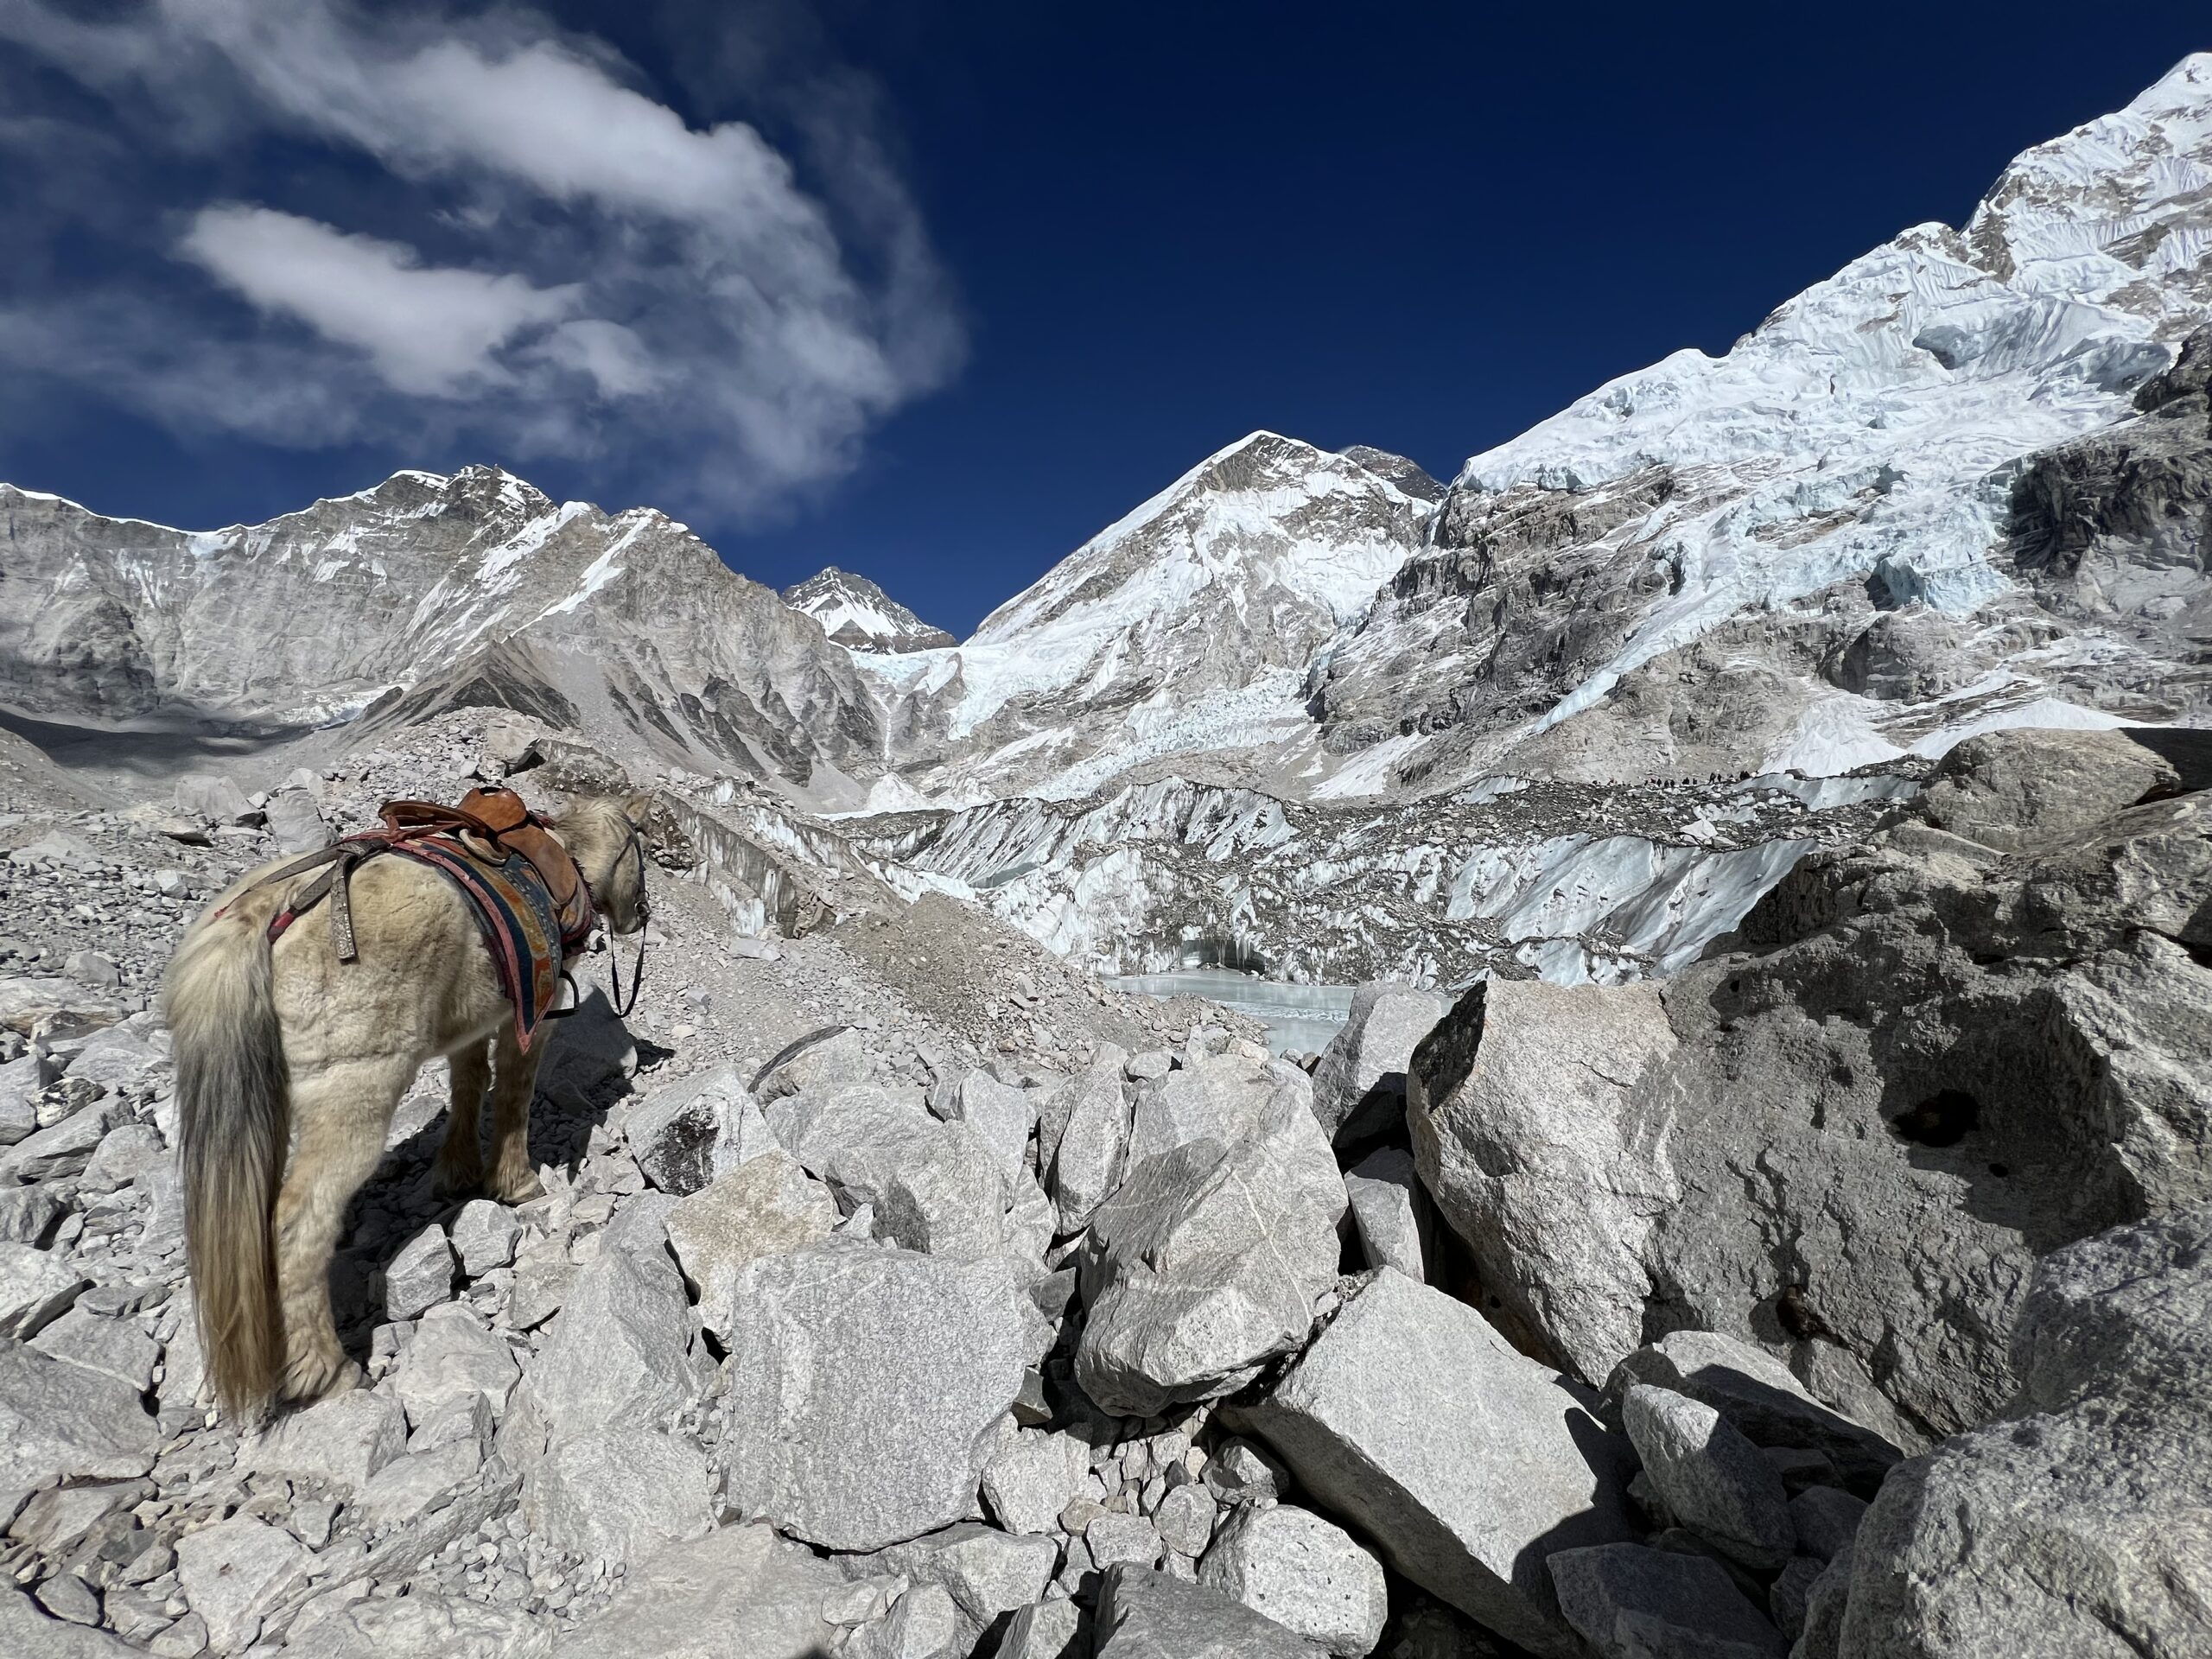 A pony outside Everest Base Camp.